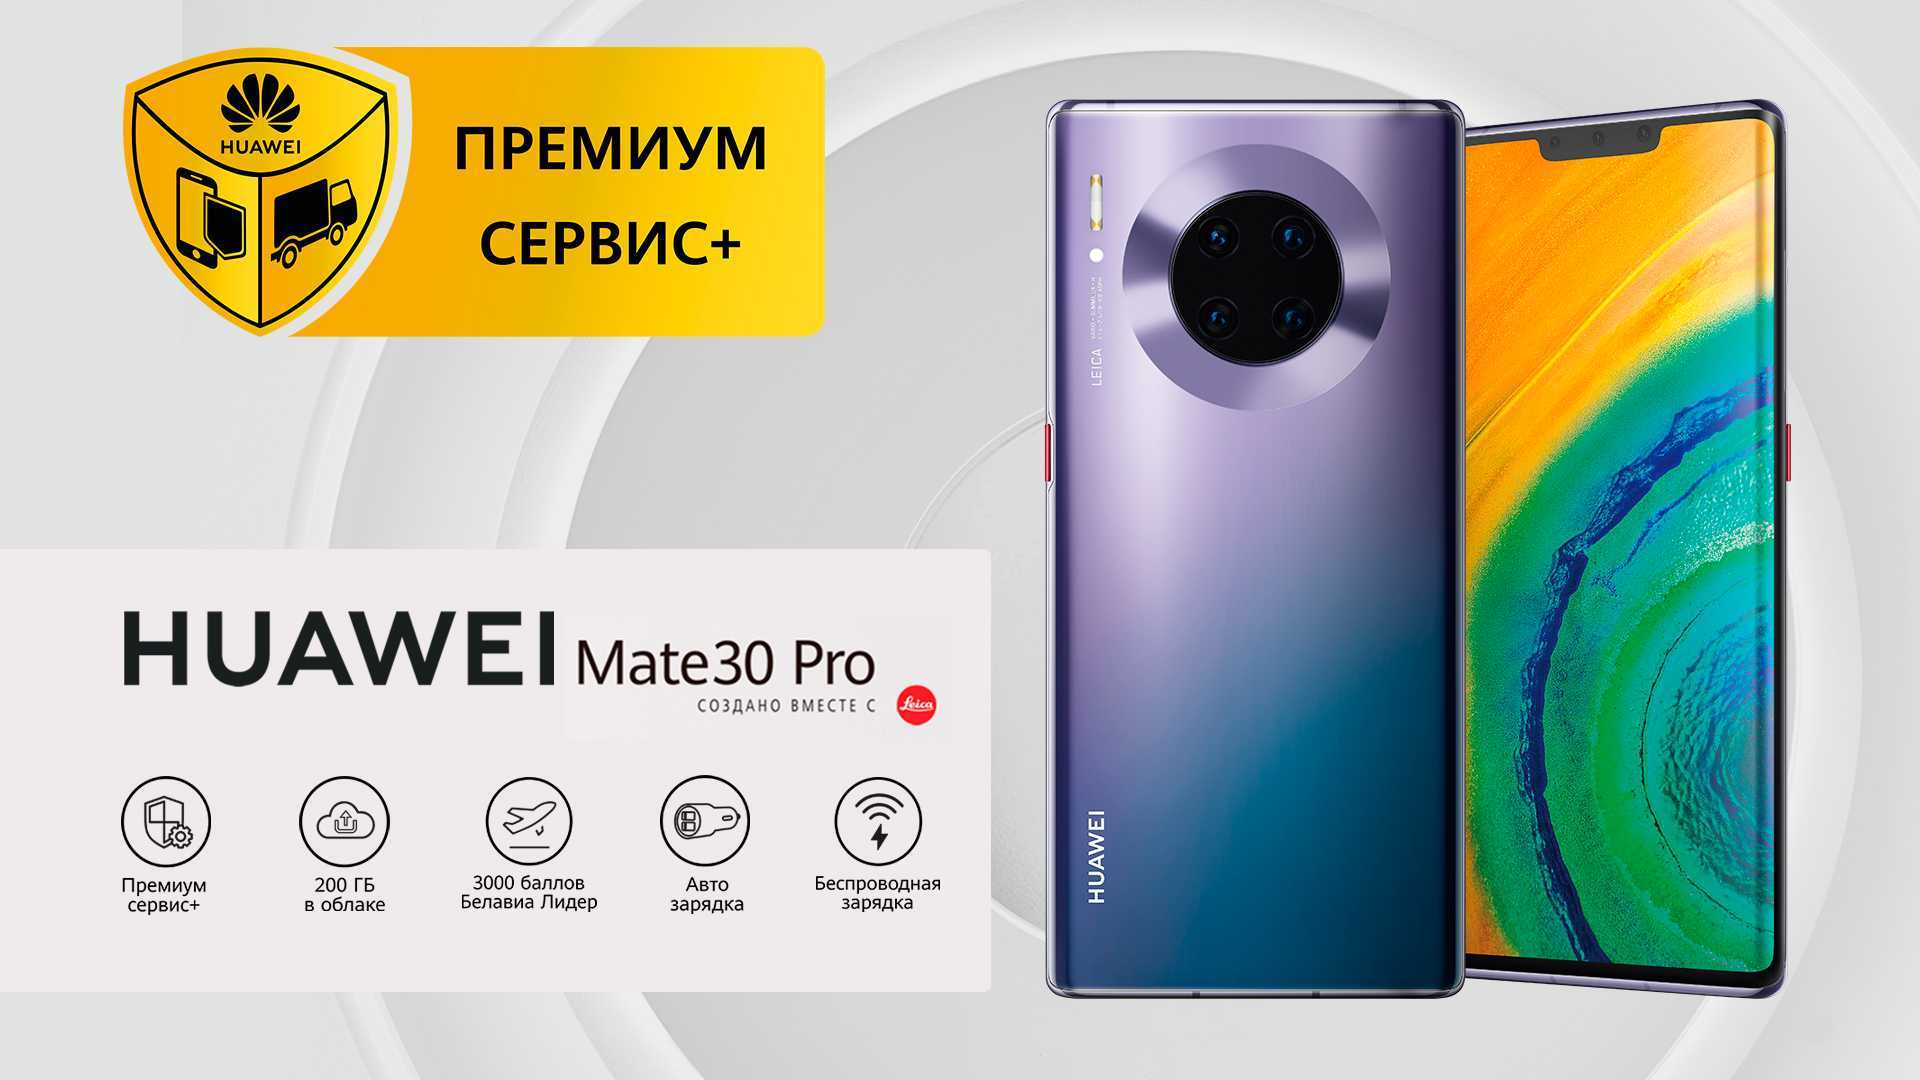 Huawei mate 30 pro – без google, но с нереальной камерой. обзор смартфона